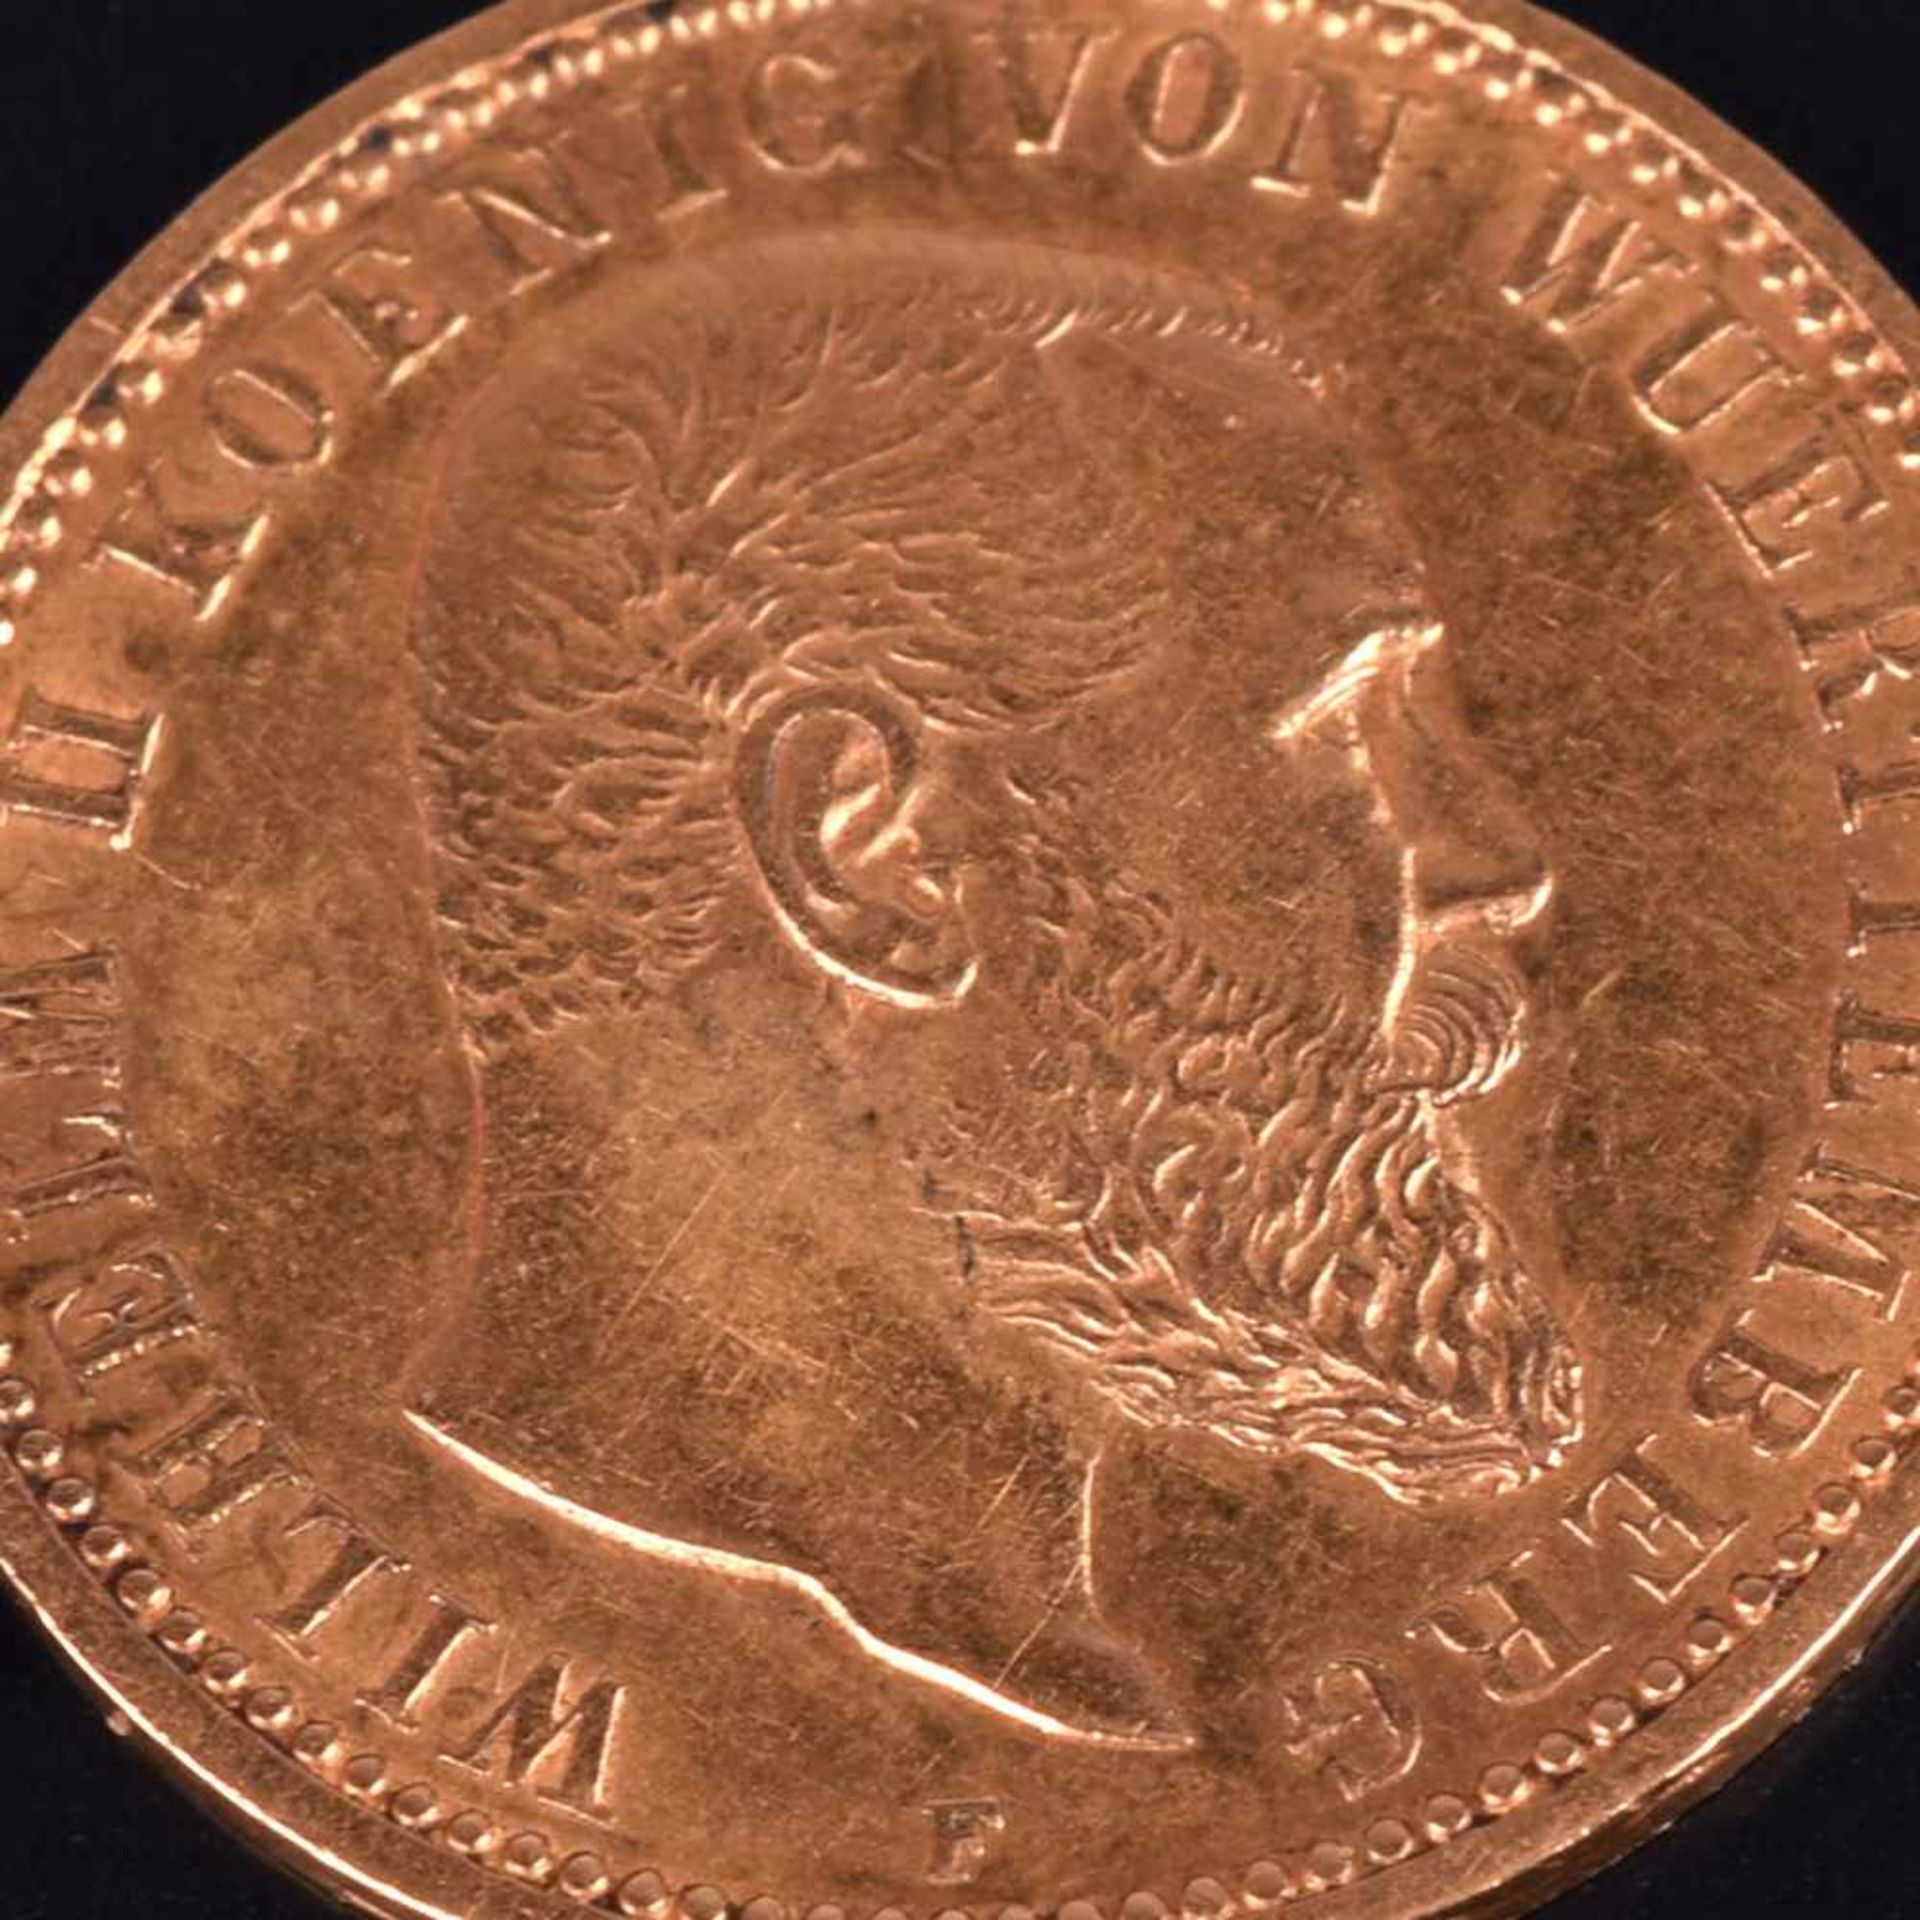 Goldmünze Kaiserreich - Württemberg 1903 10 Mark in Gold, 900/1000, 3,58 g, av. Wilhelm II König von